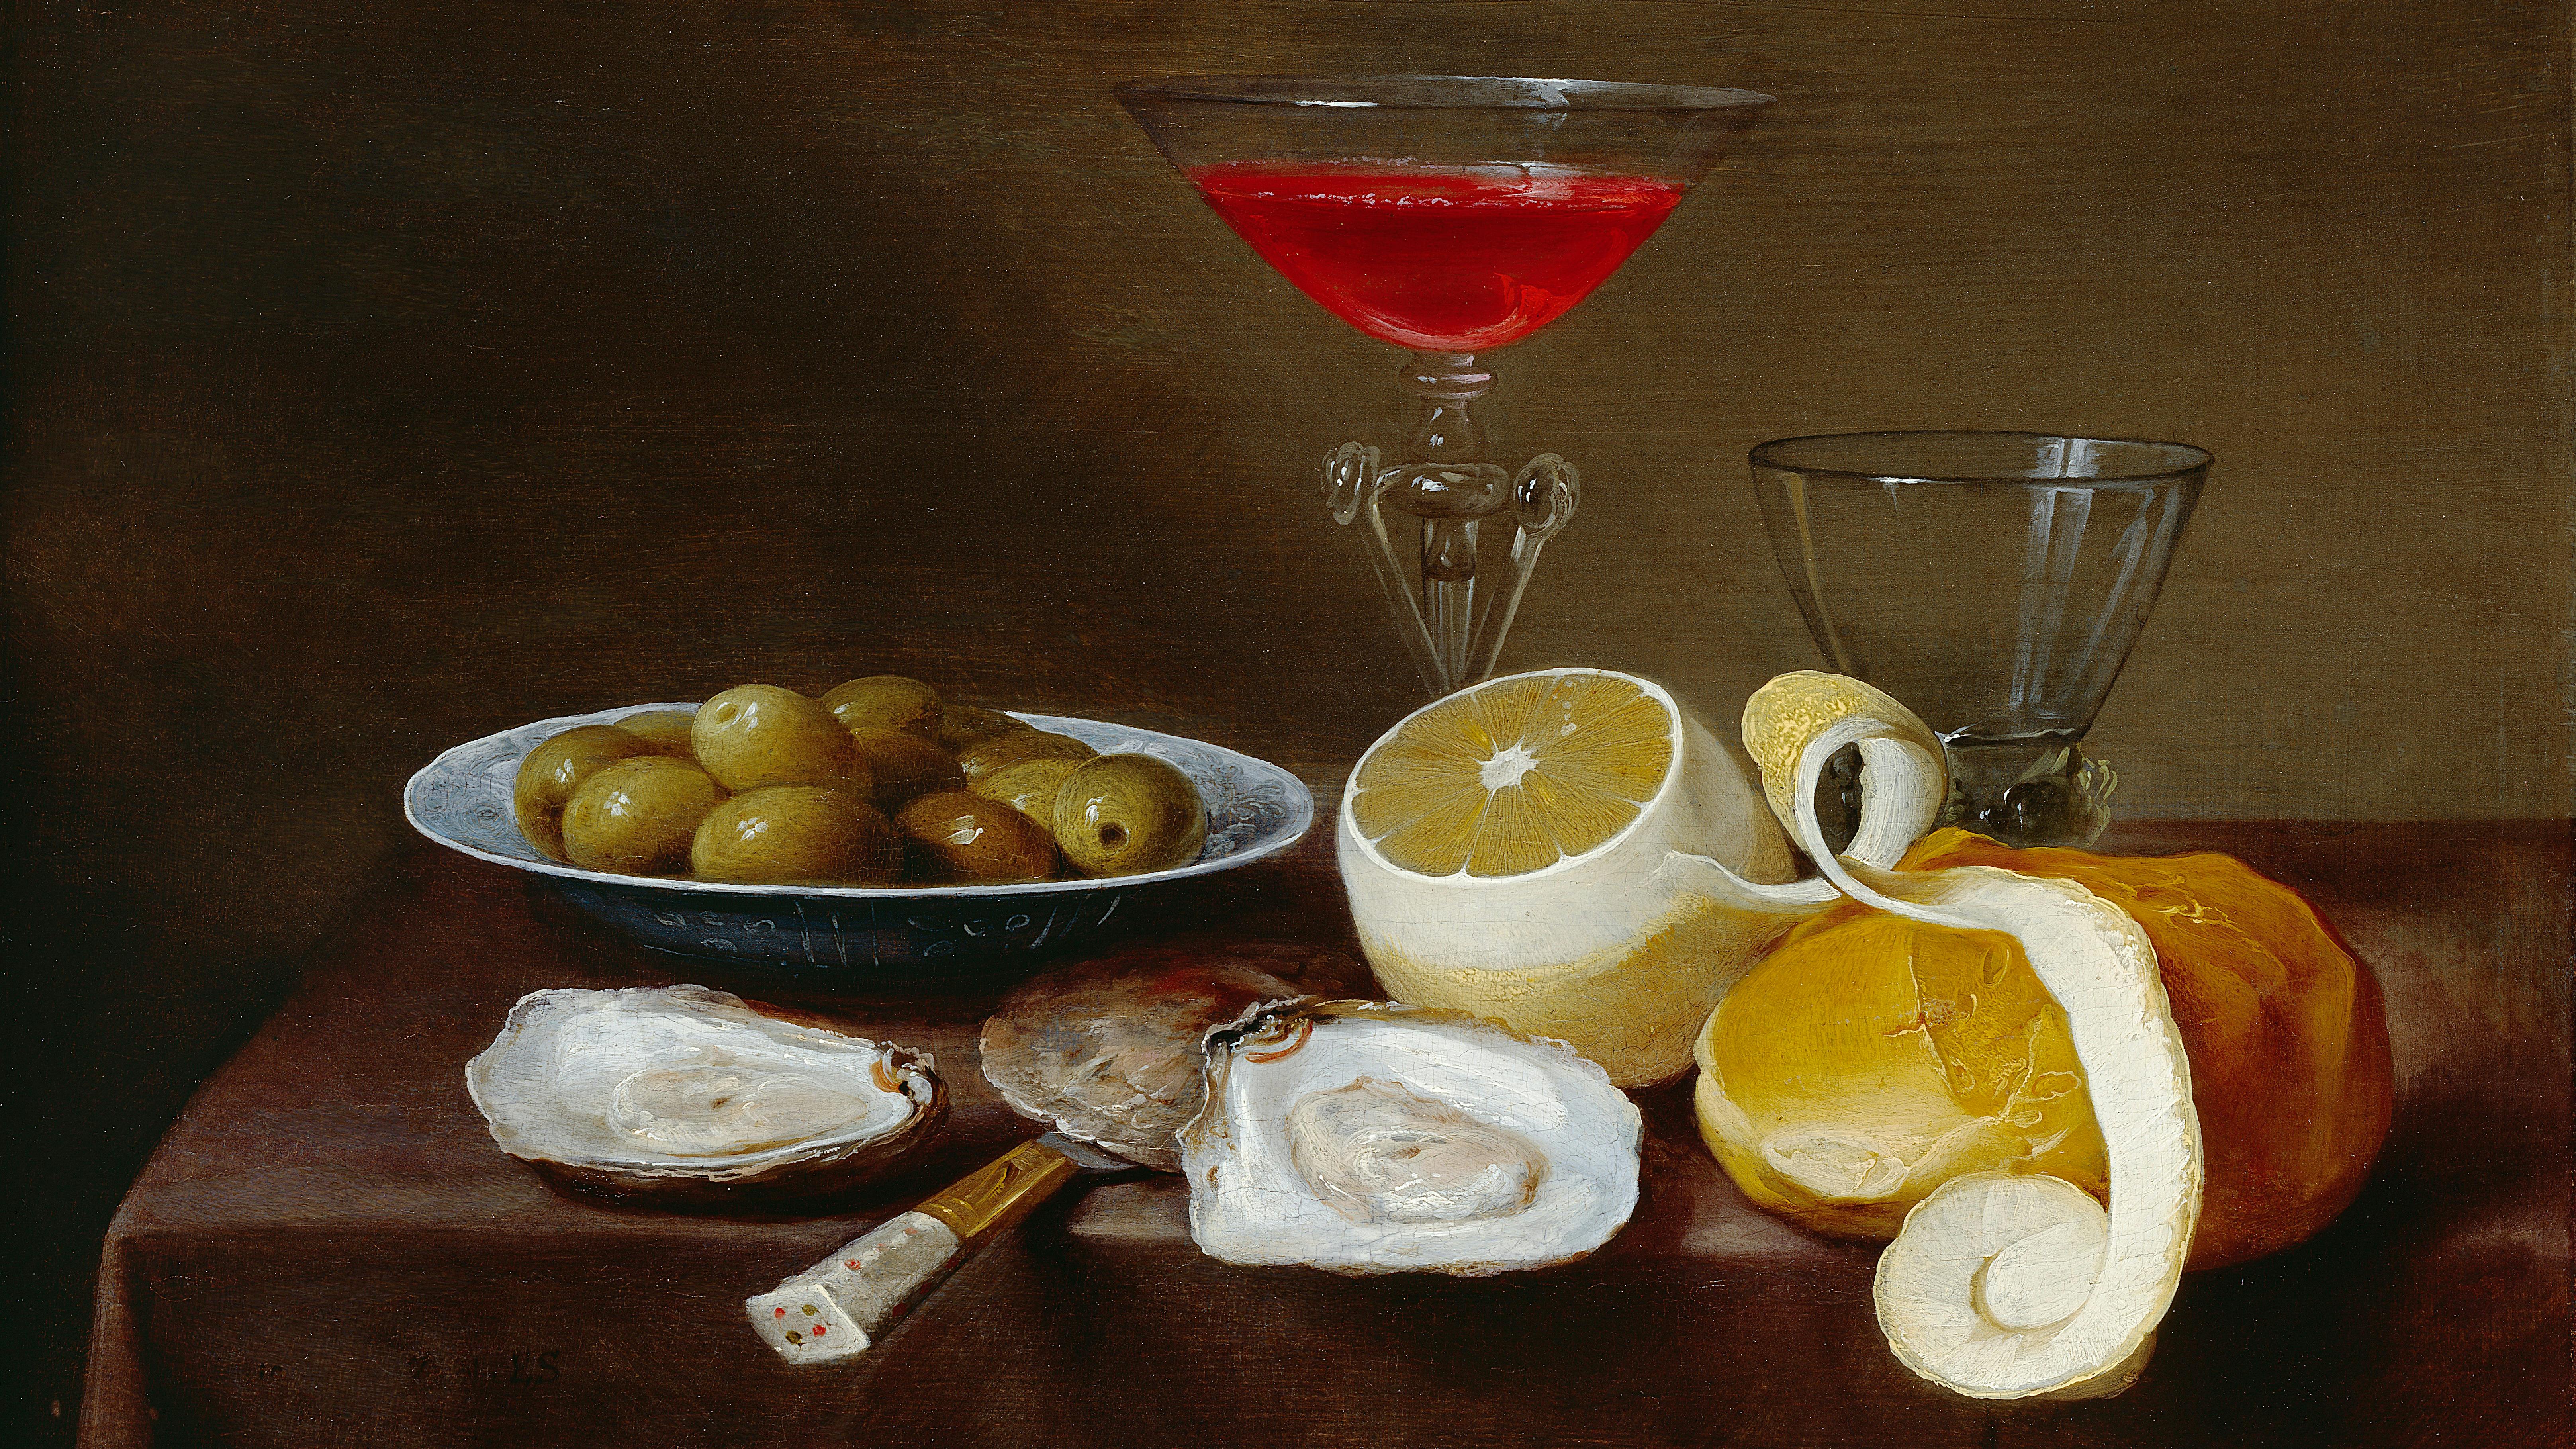 Gemälde eines Stillebens mit Oliven und einem Glaskelch mit roter Flüssigkeit.